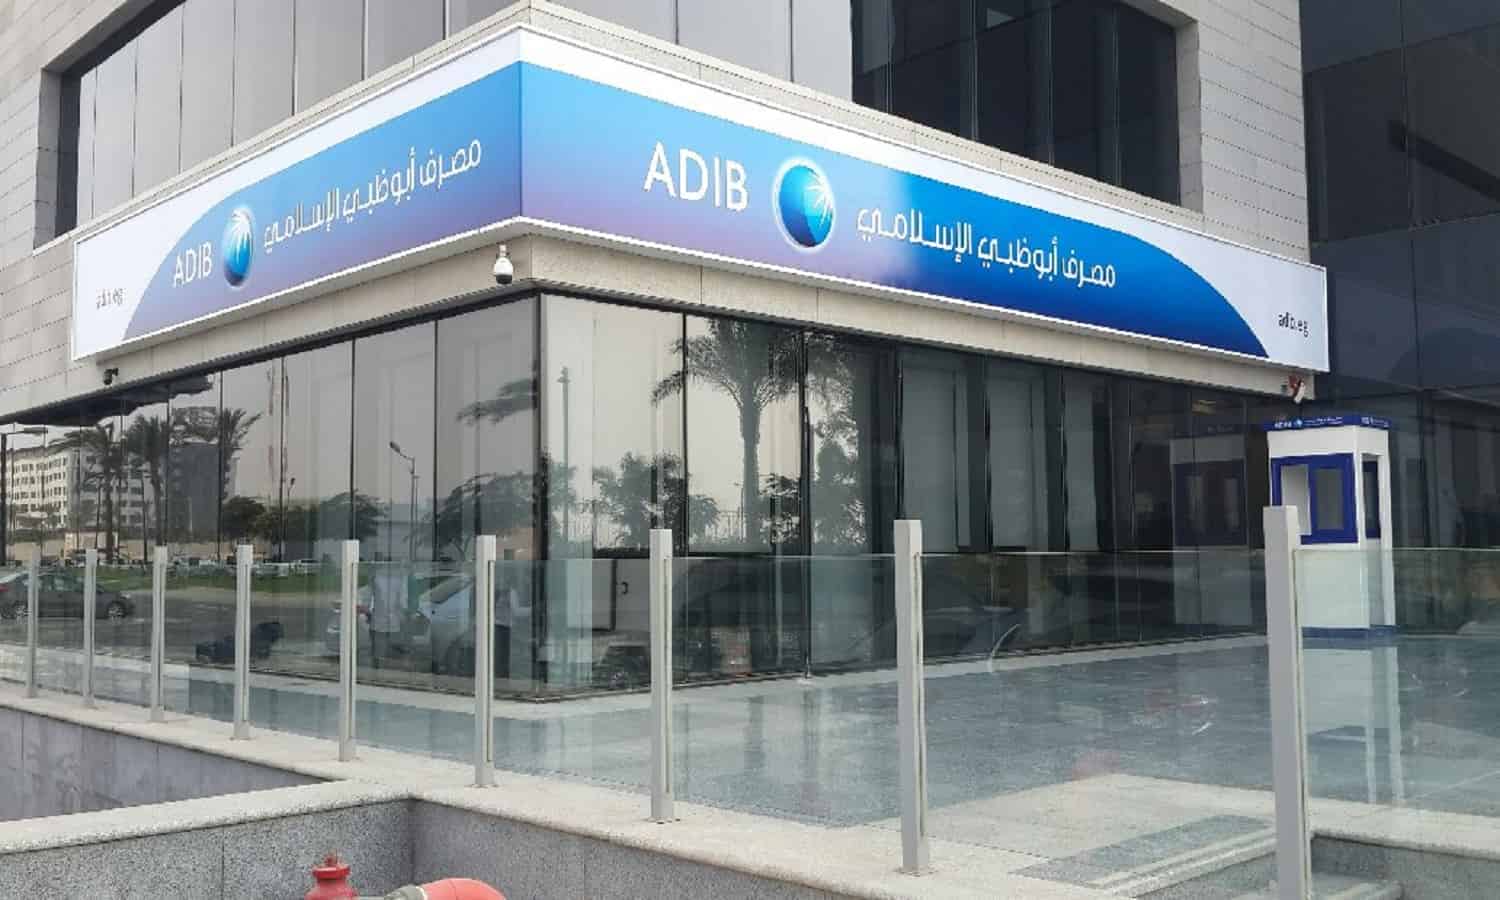 أبو ظبي يطلق الخدمات المصرفية الخاصة المتوافقة مع مبادئ الشريعة الإسلامية
